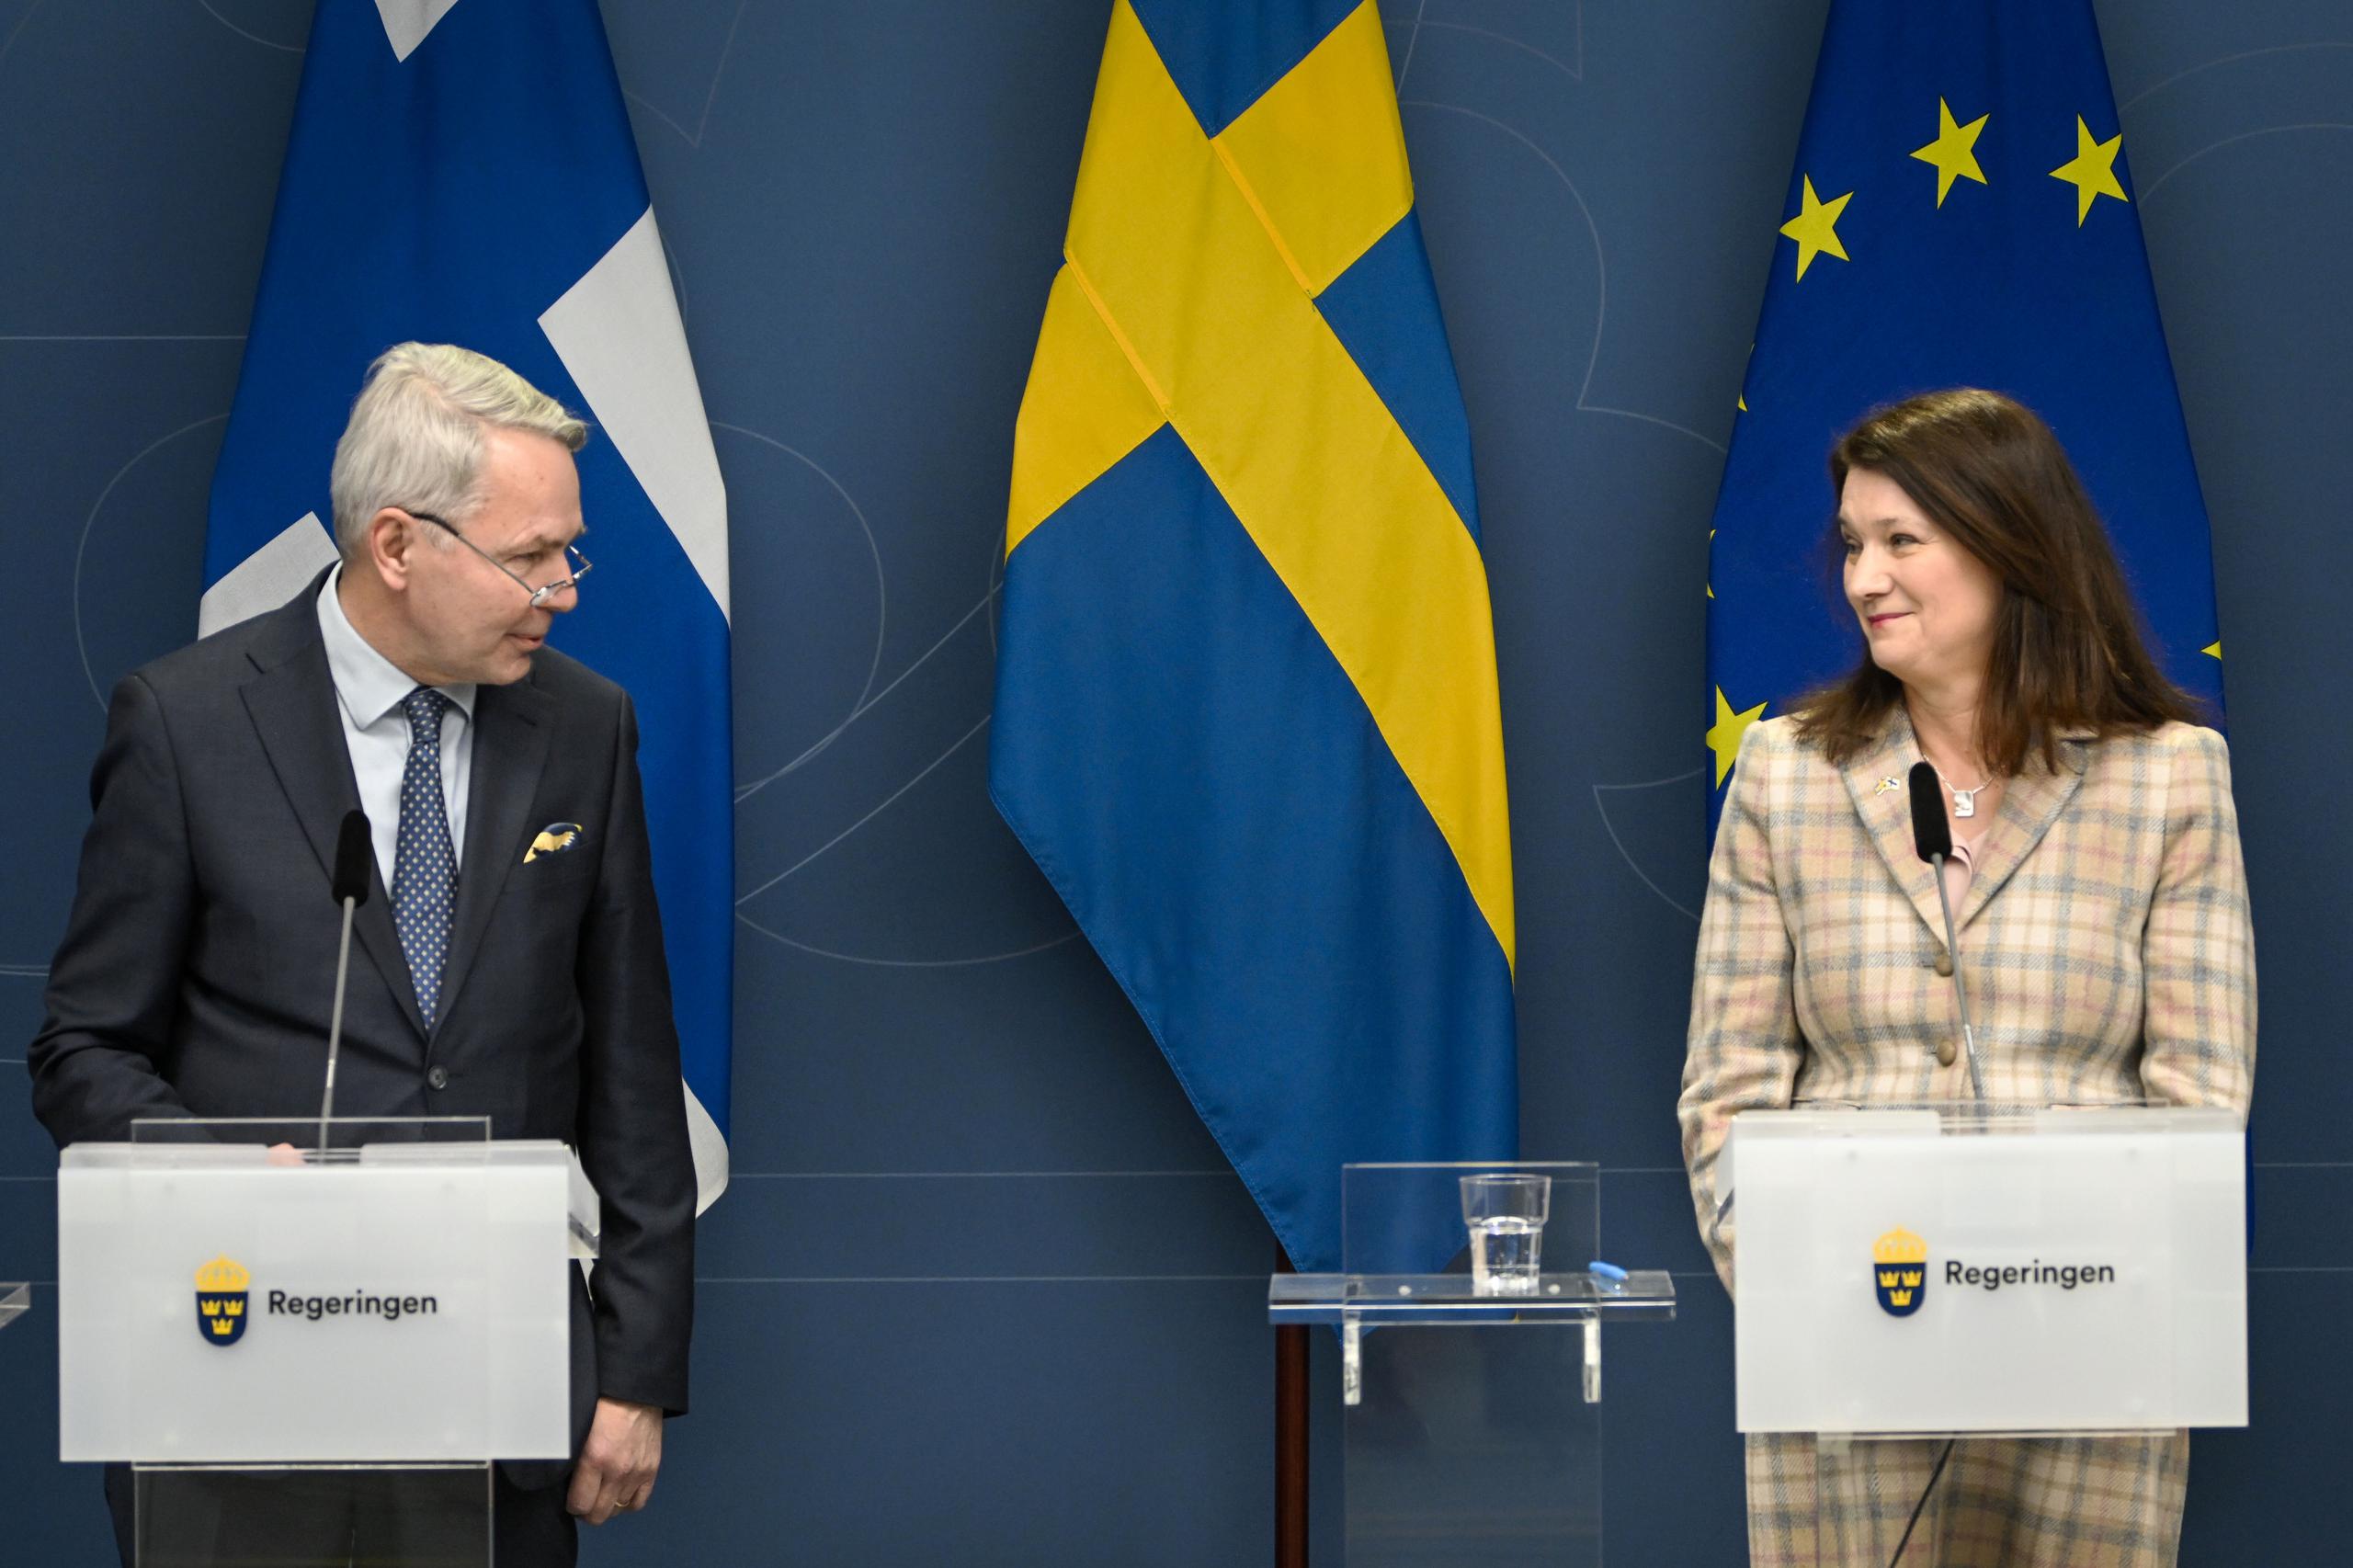 Moscú ha advertido que el ingreso de Suecia y Finlandia a la OTAN no contribuiría a la estabilidad en Europa.